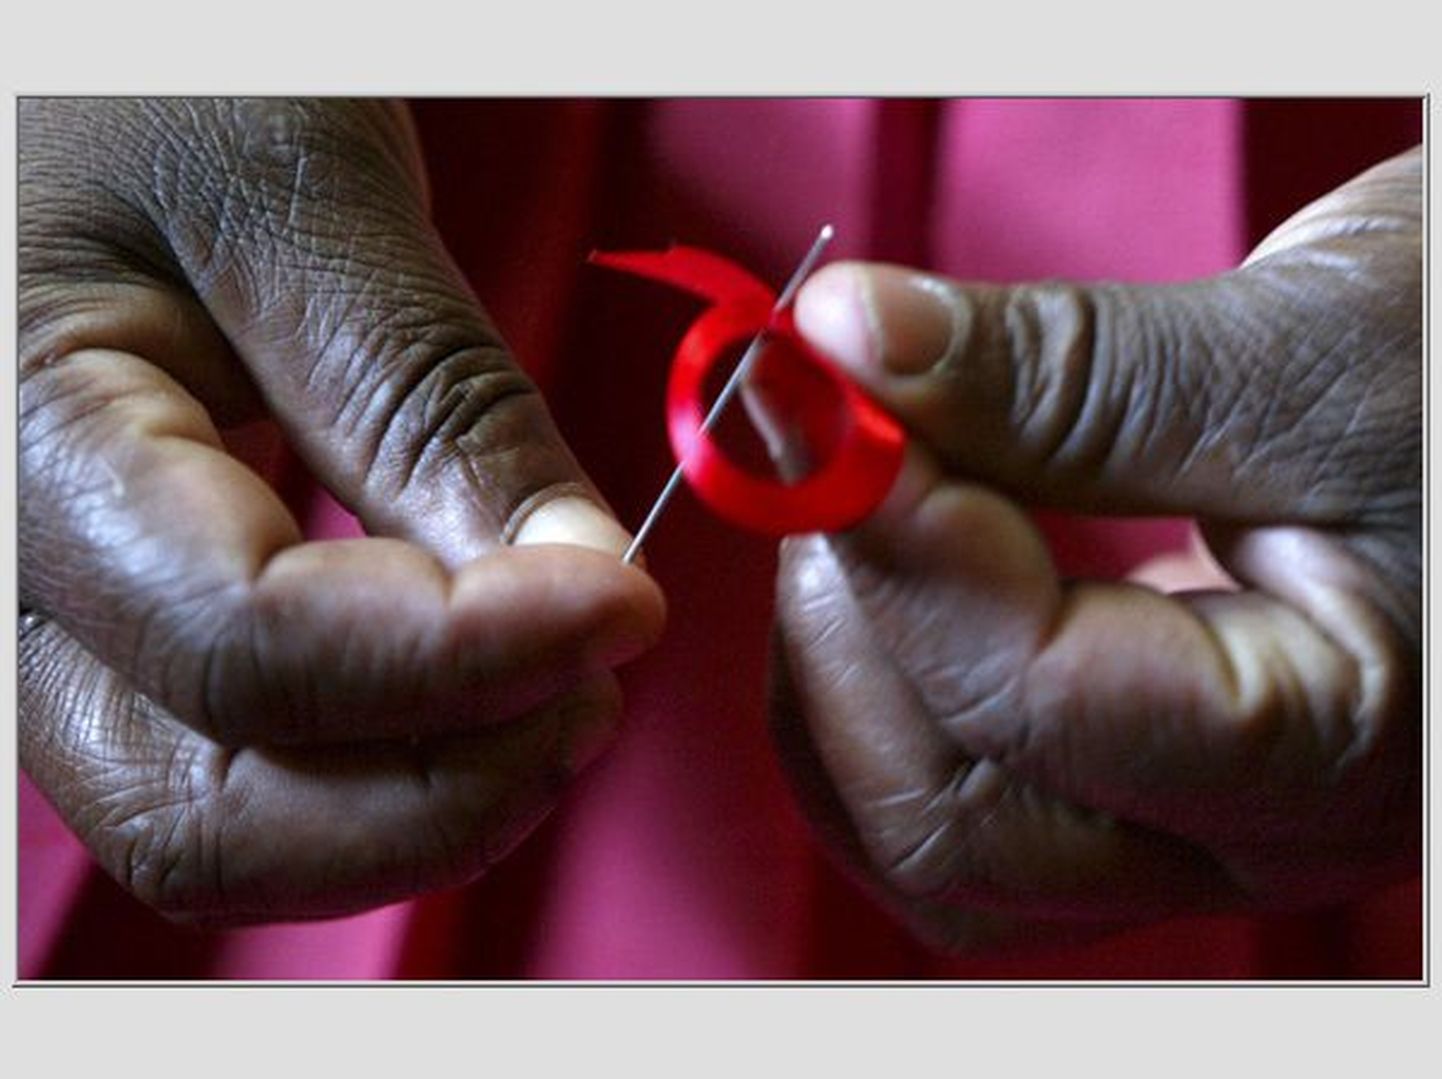 Keenia naine valmistamas AIDS-i vastu võitlemise sümbolina tuttavat punast paela